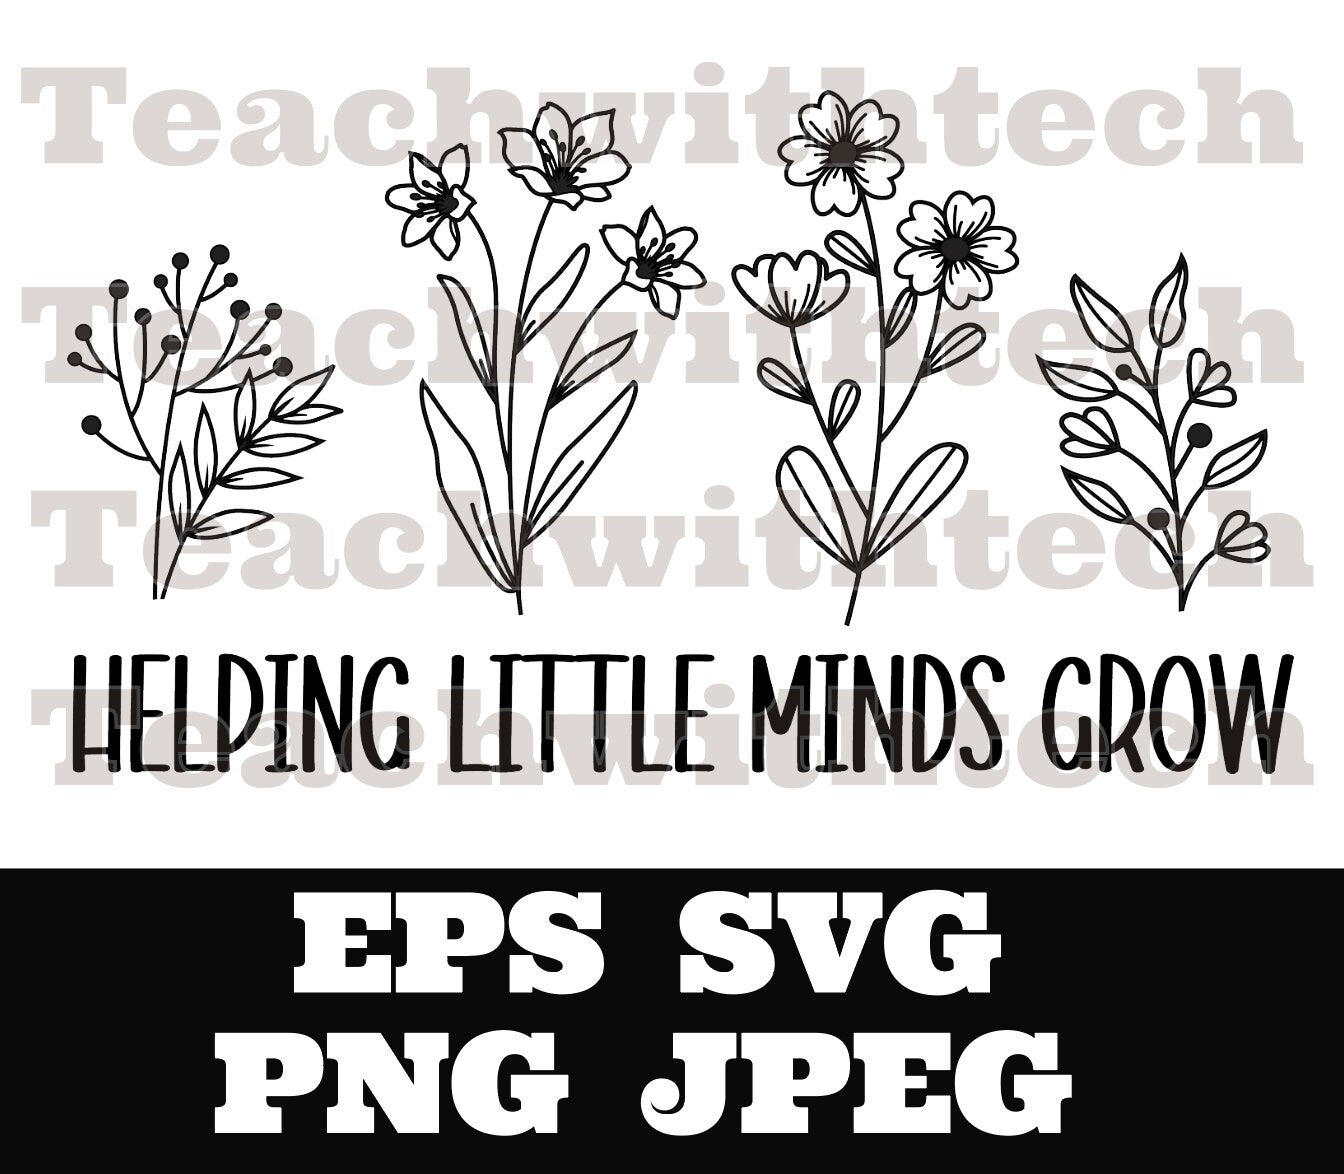 Helping little minds grow SVG PNG JPEG eps - Teacher T shirt cut file - cricut - silhouette Teacher cut file School download - Student Grow